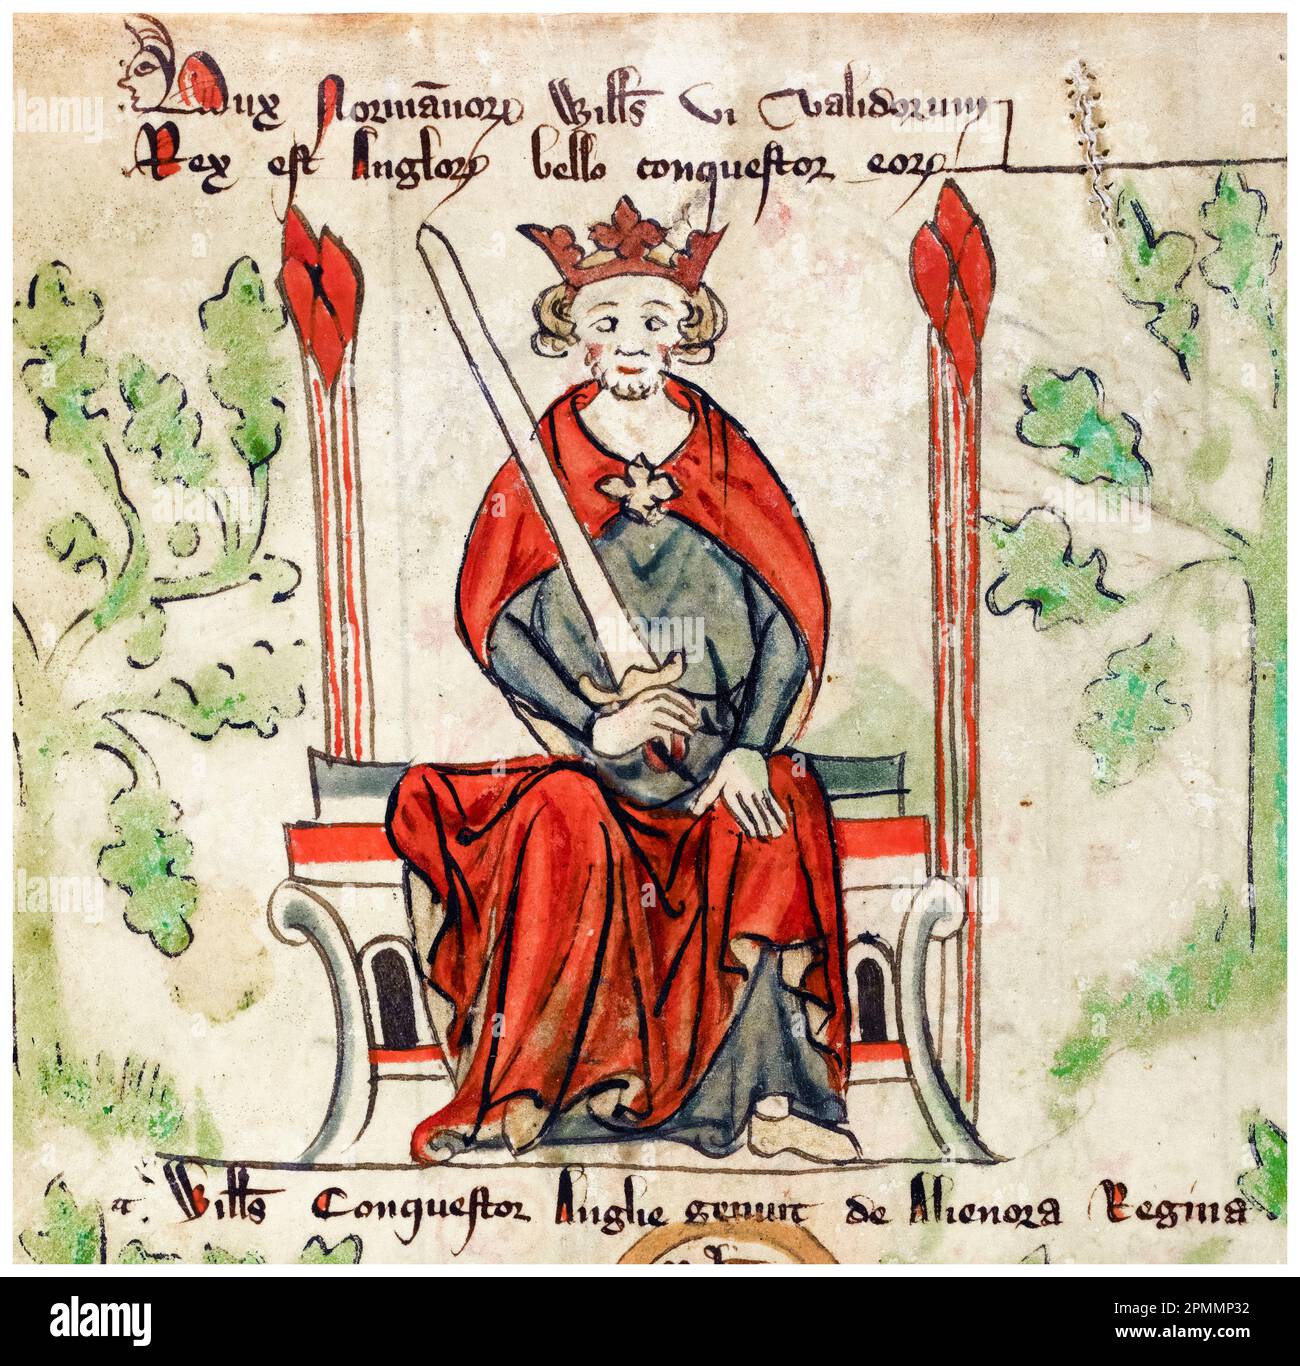 William le Conquérant, William I d'Angleterre (vers 1028-1087), premier Norman, roi d'Angleterre (1066-1087), portrait manuscrit illuminé de Peter de Langtoft, 1307-1327 Banque D'Images